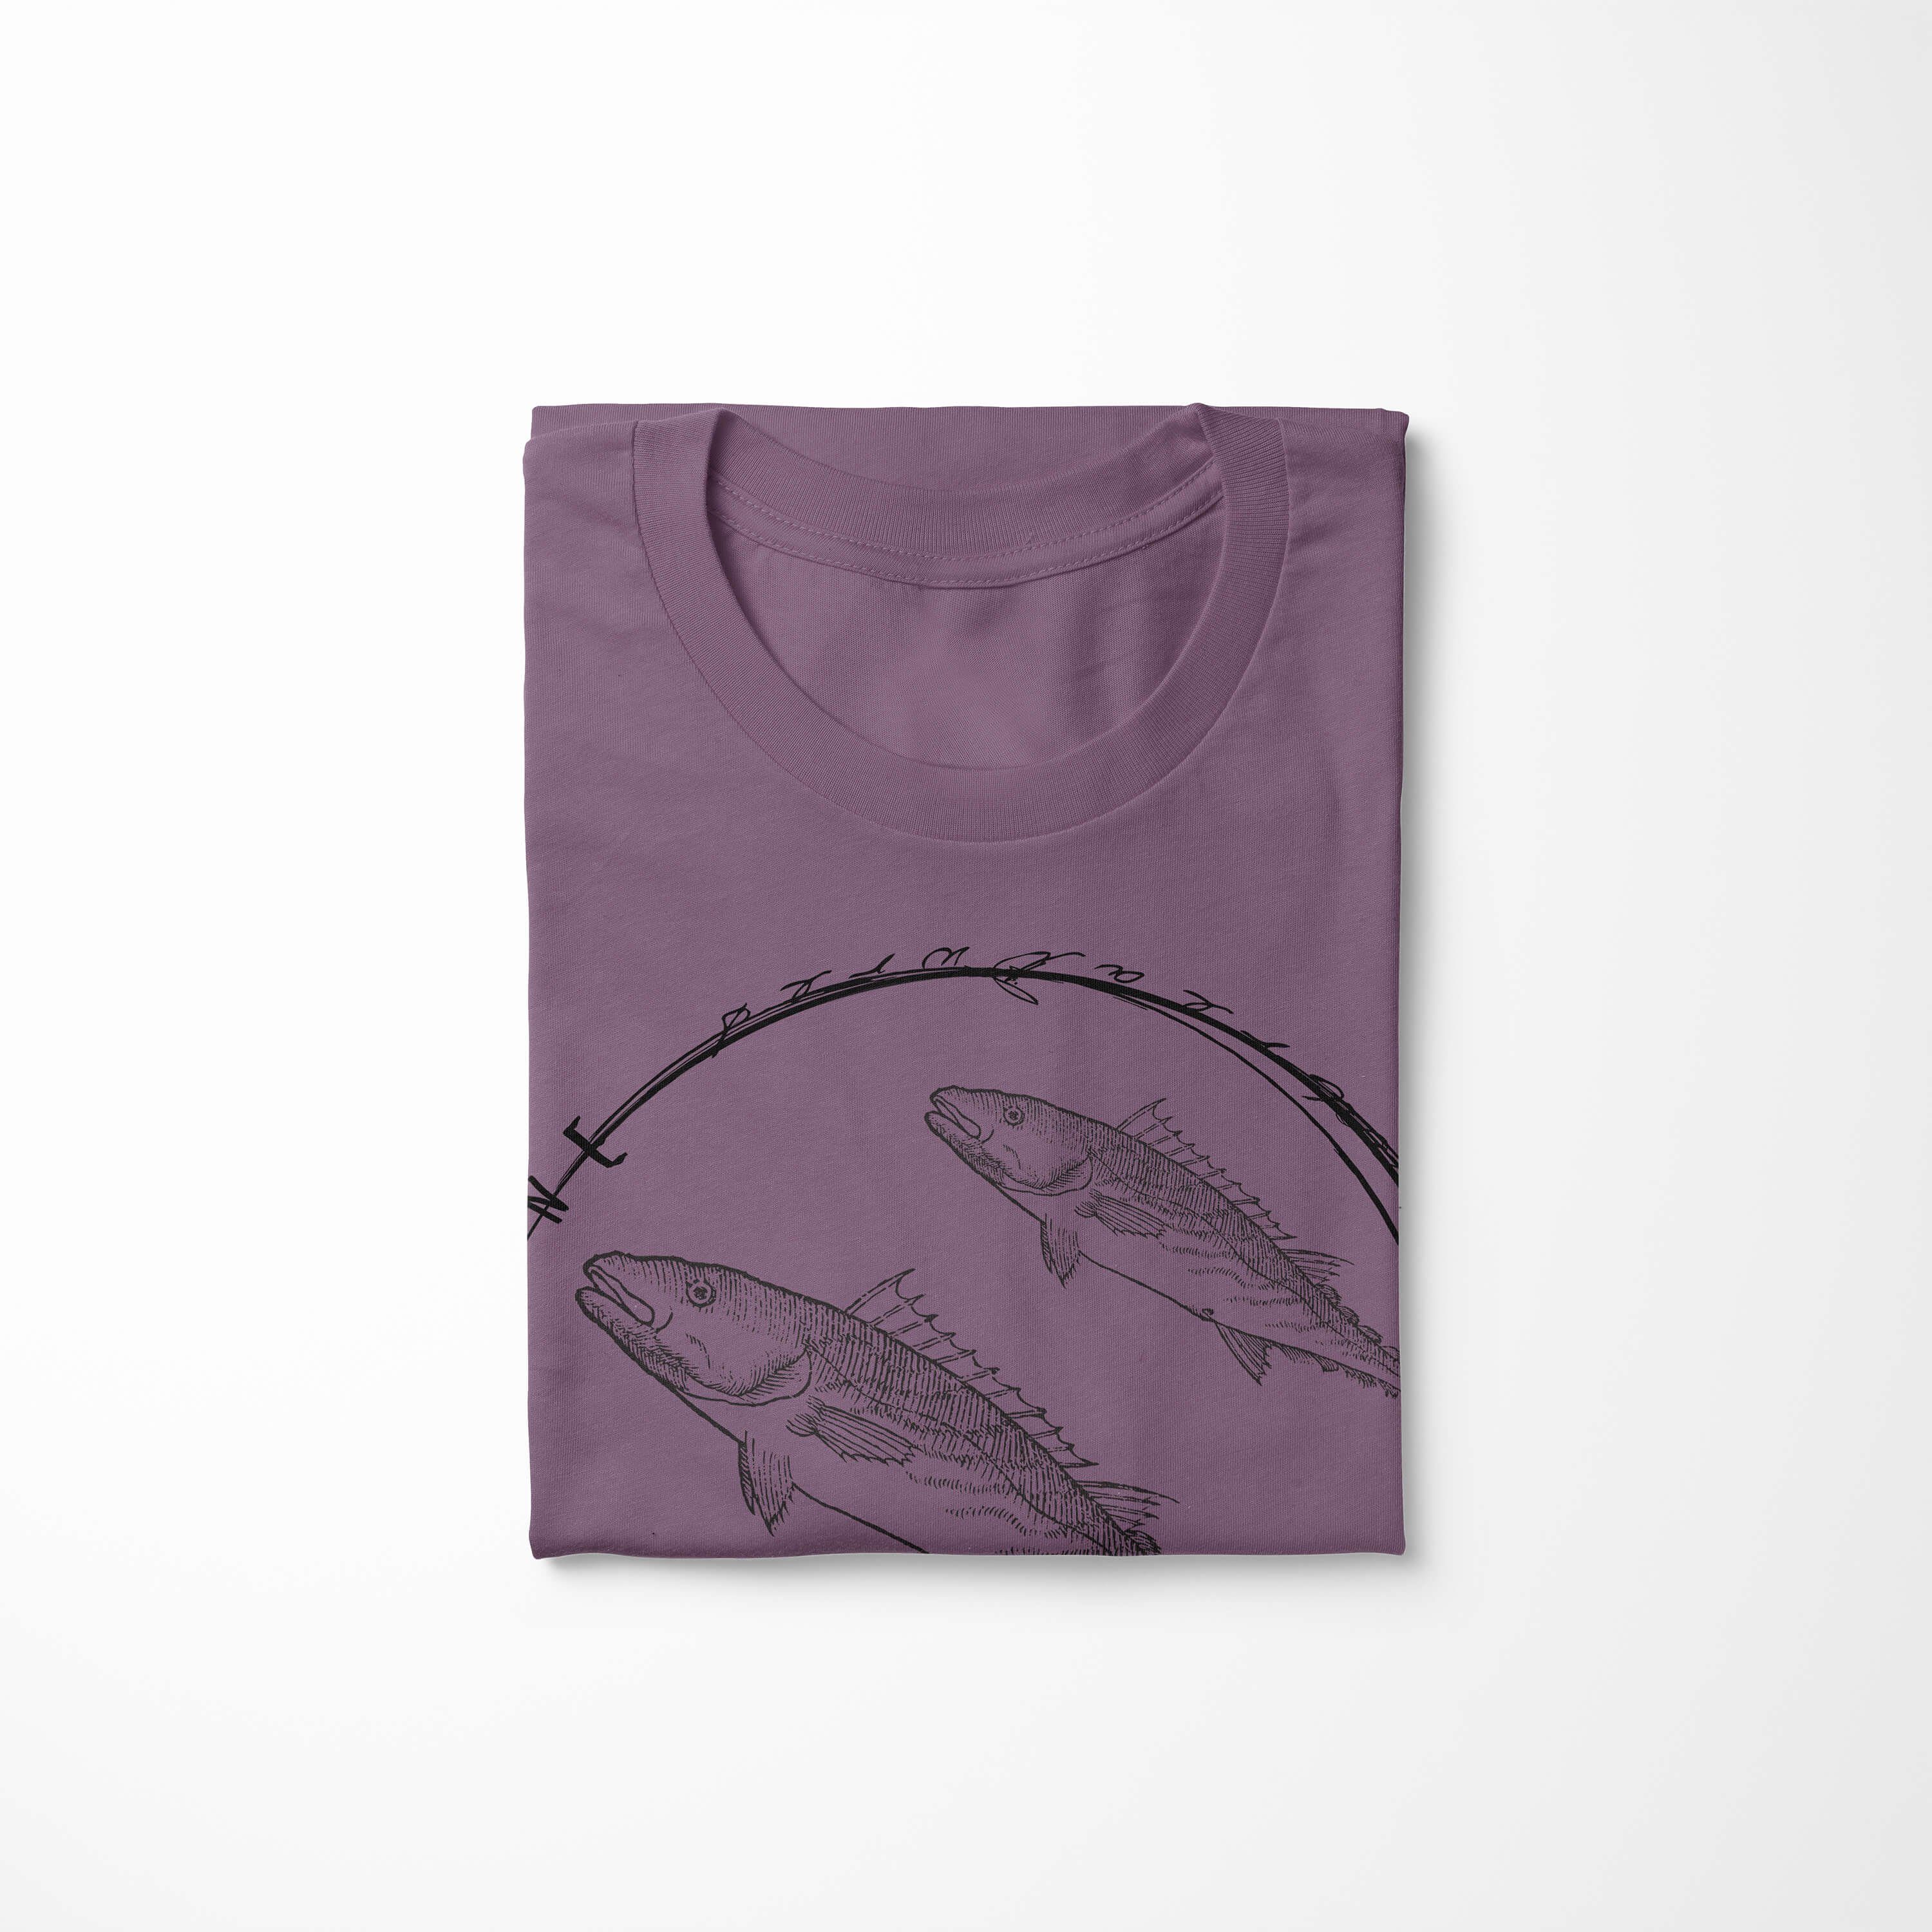 T-Shirt T-Shirt 094 Sea Fische Sinus Creatures, Sea / - Serie: und Struktur Shiraz Art Tiefsee Schnitt feine sportlicher